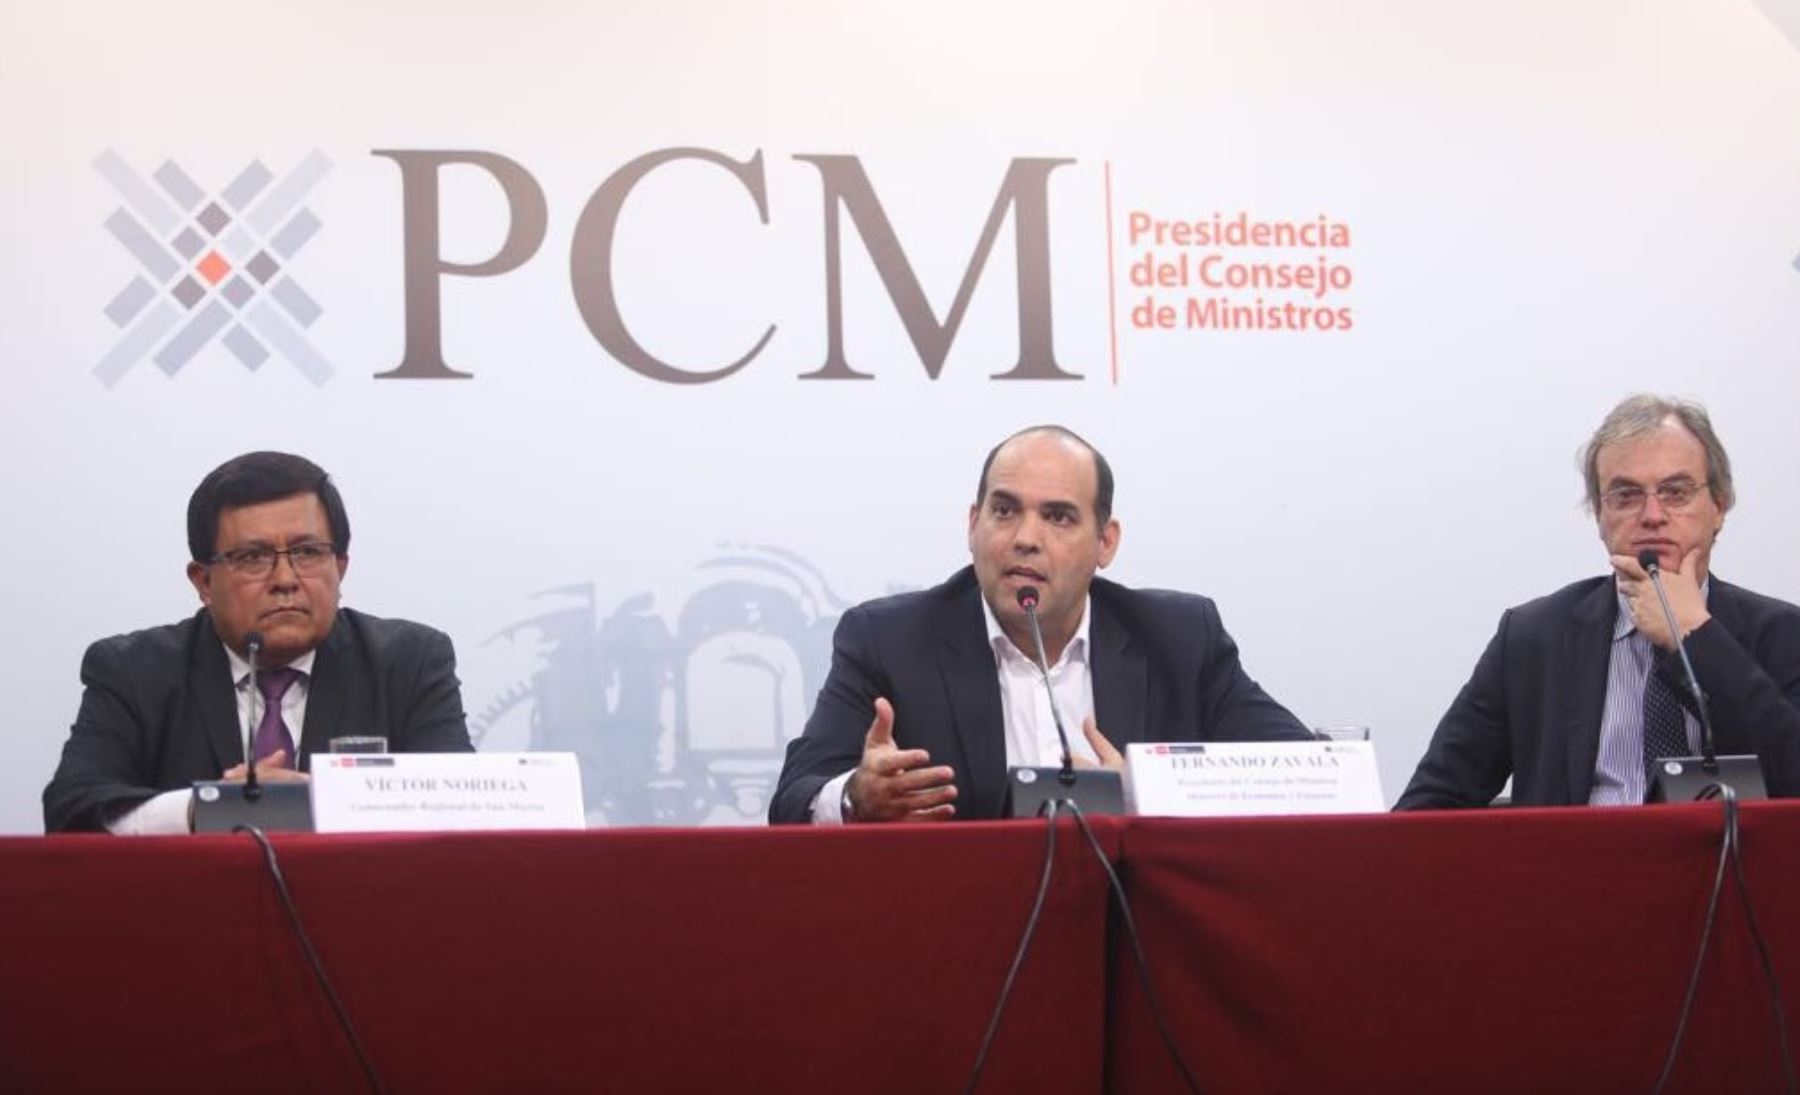 El presidente del Consejo de Ministros, Fernando Zavala, anunció hoy que se prorrogará por un plazo de 30 días el estado de emergencia en Tumán, a fin de garantizar el orden y la tranquilidad públicos